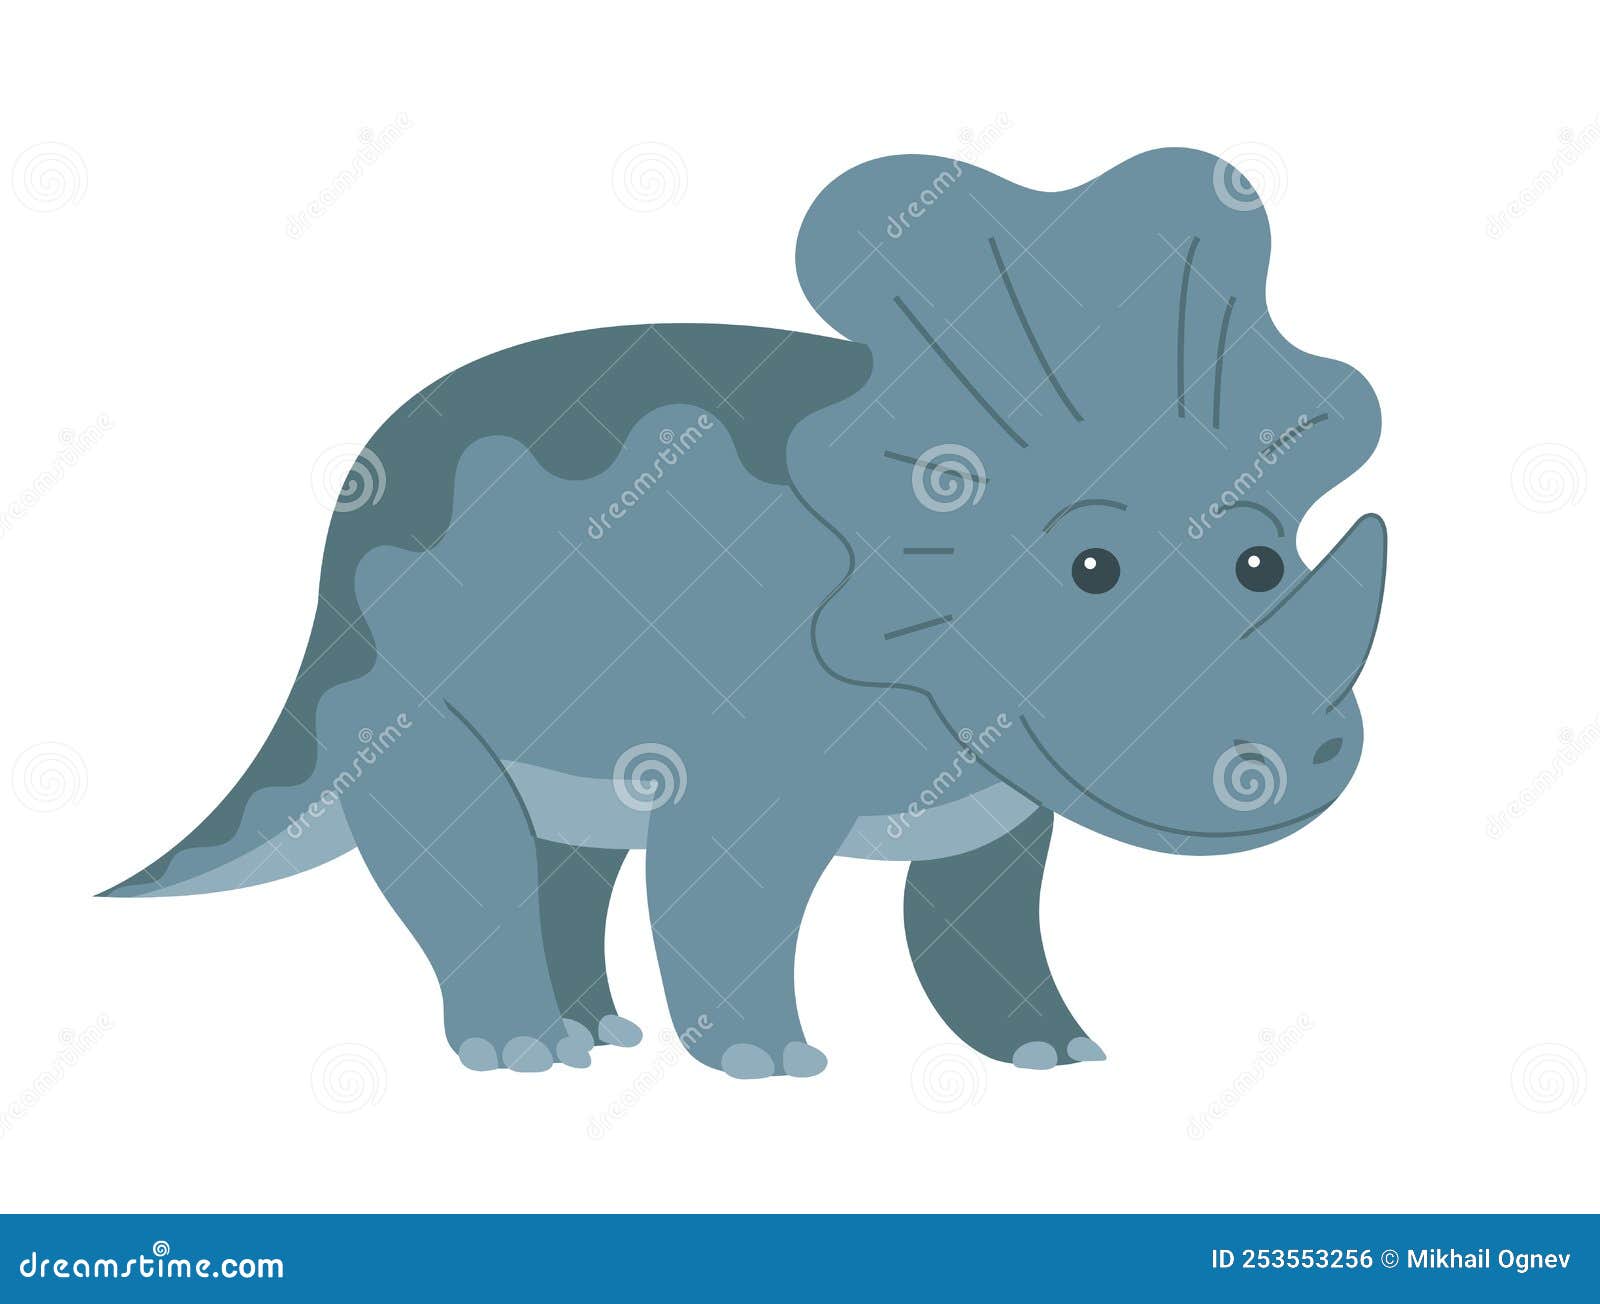 Desenho de dinossauro triceratops fofo saindo do ovo